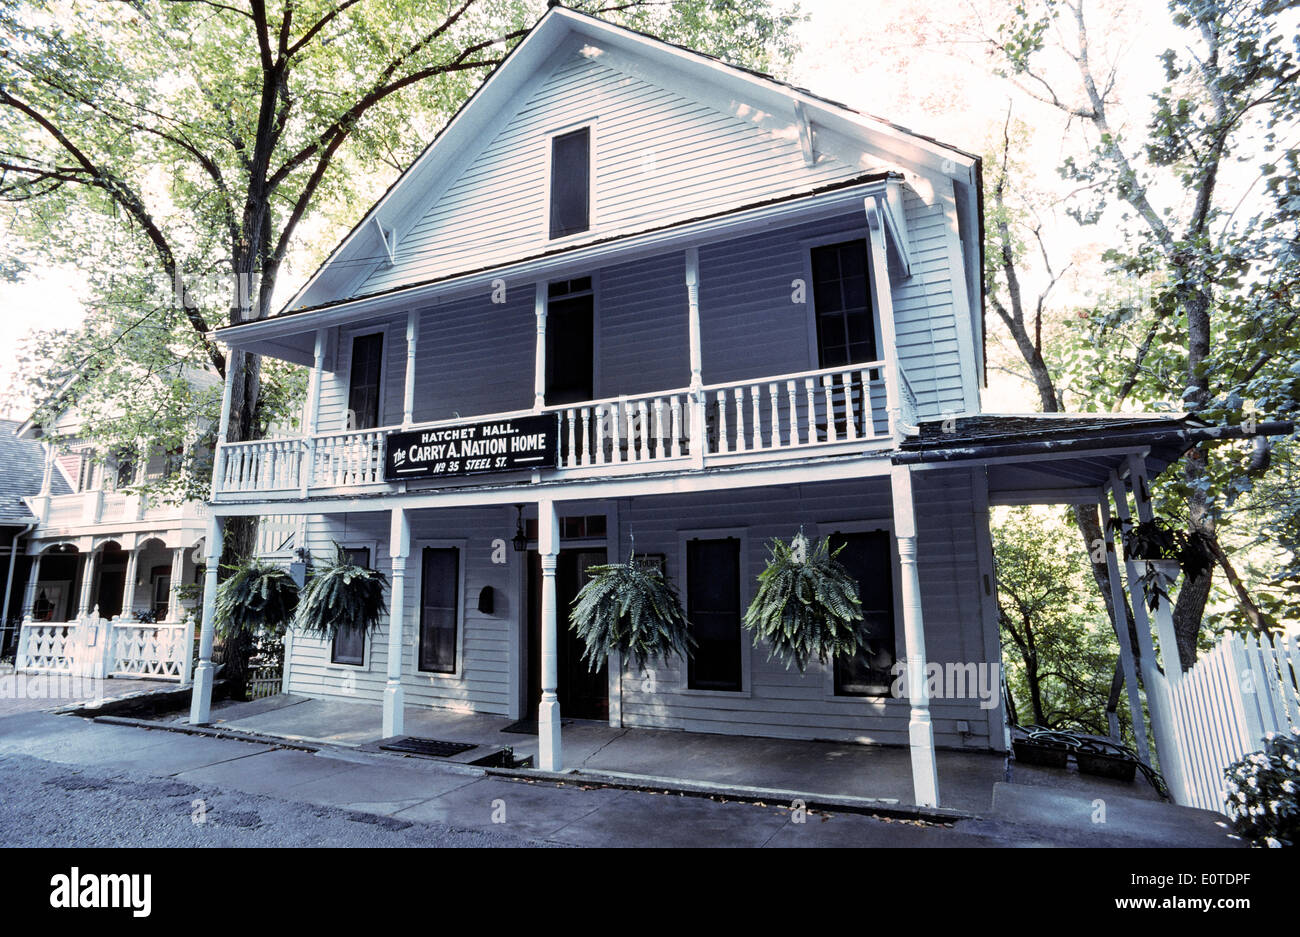 La casa de América del notorio templanza abogado Carrie nación puede verse en Steele Street en los Ozarks ciudad de Eureka Springs, Arkansas, Estados Unidos. Foto de stock